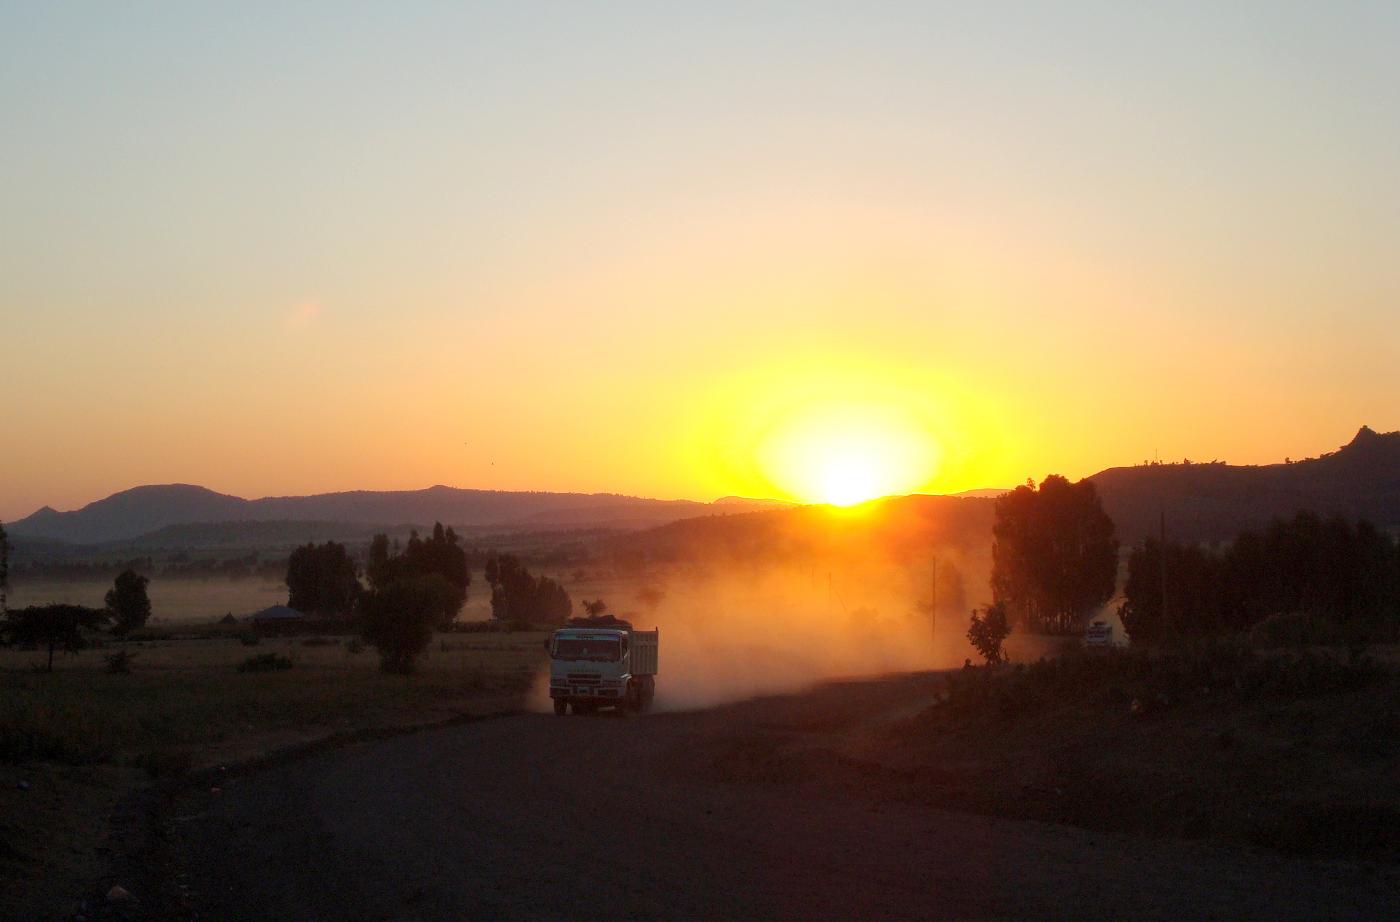 DSC031730.jpg - Un camion soulve un nuage de poussire au soleil couchant, sur la route dAxoum